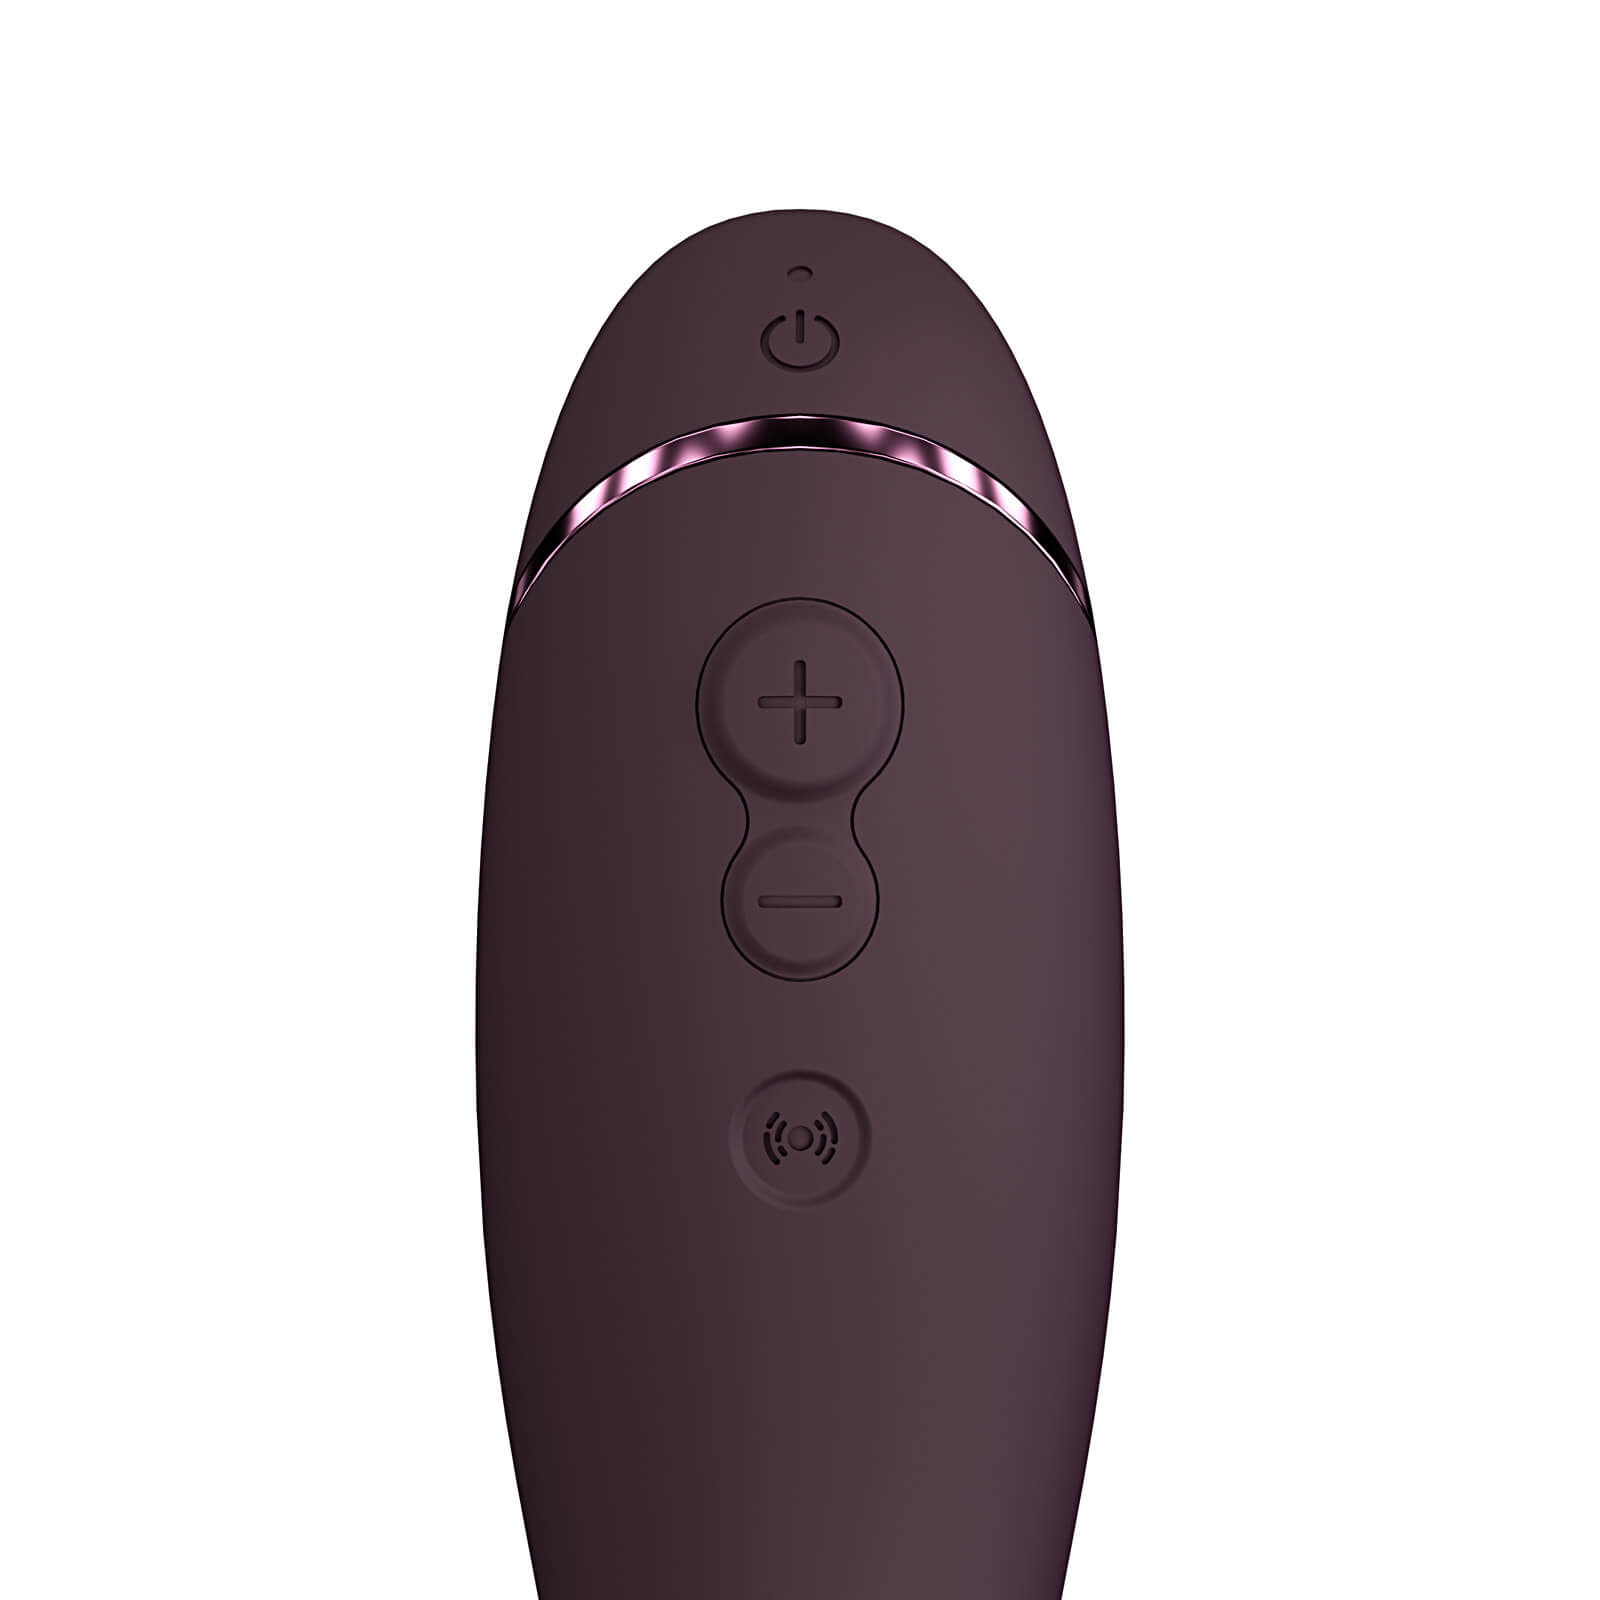 Womanizer OG (Aubergine), a unique G-Spot vibrator